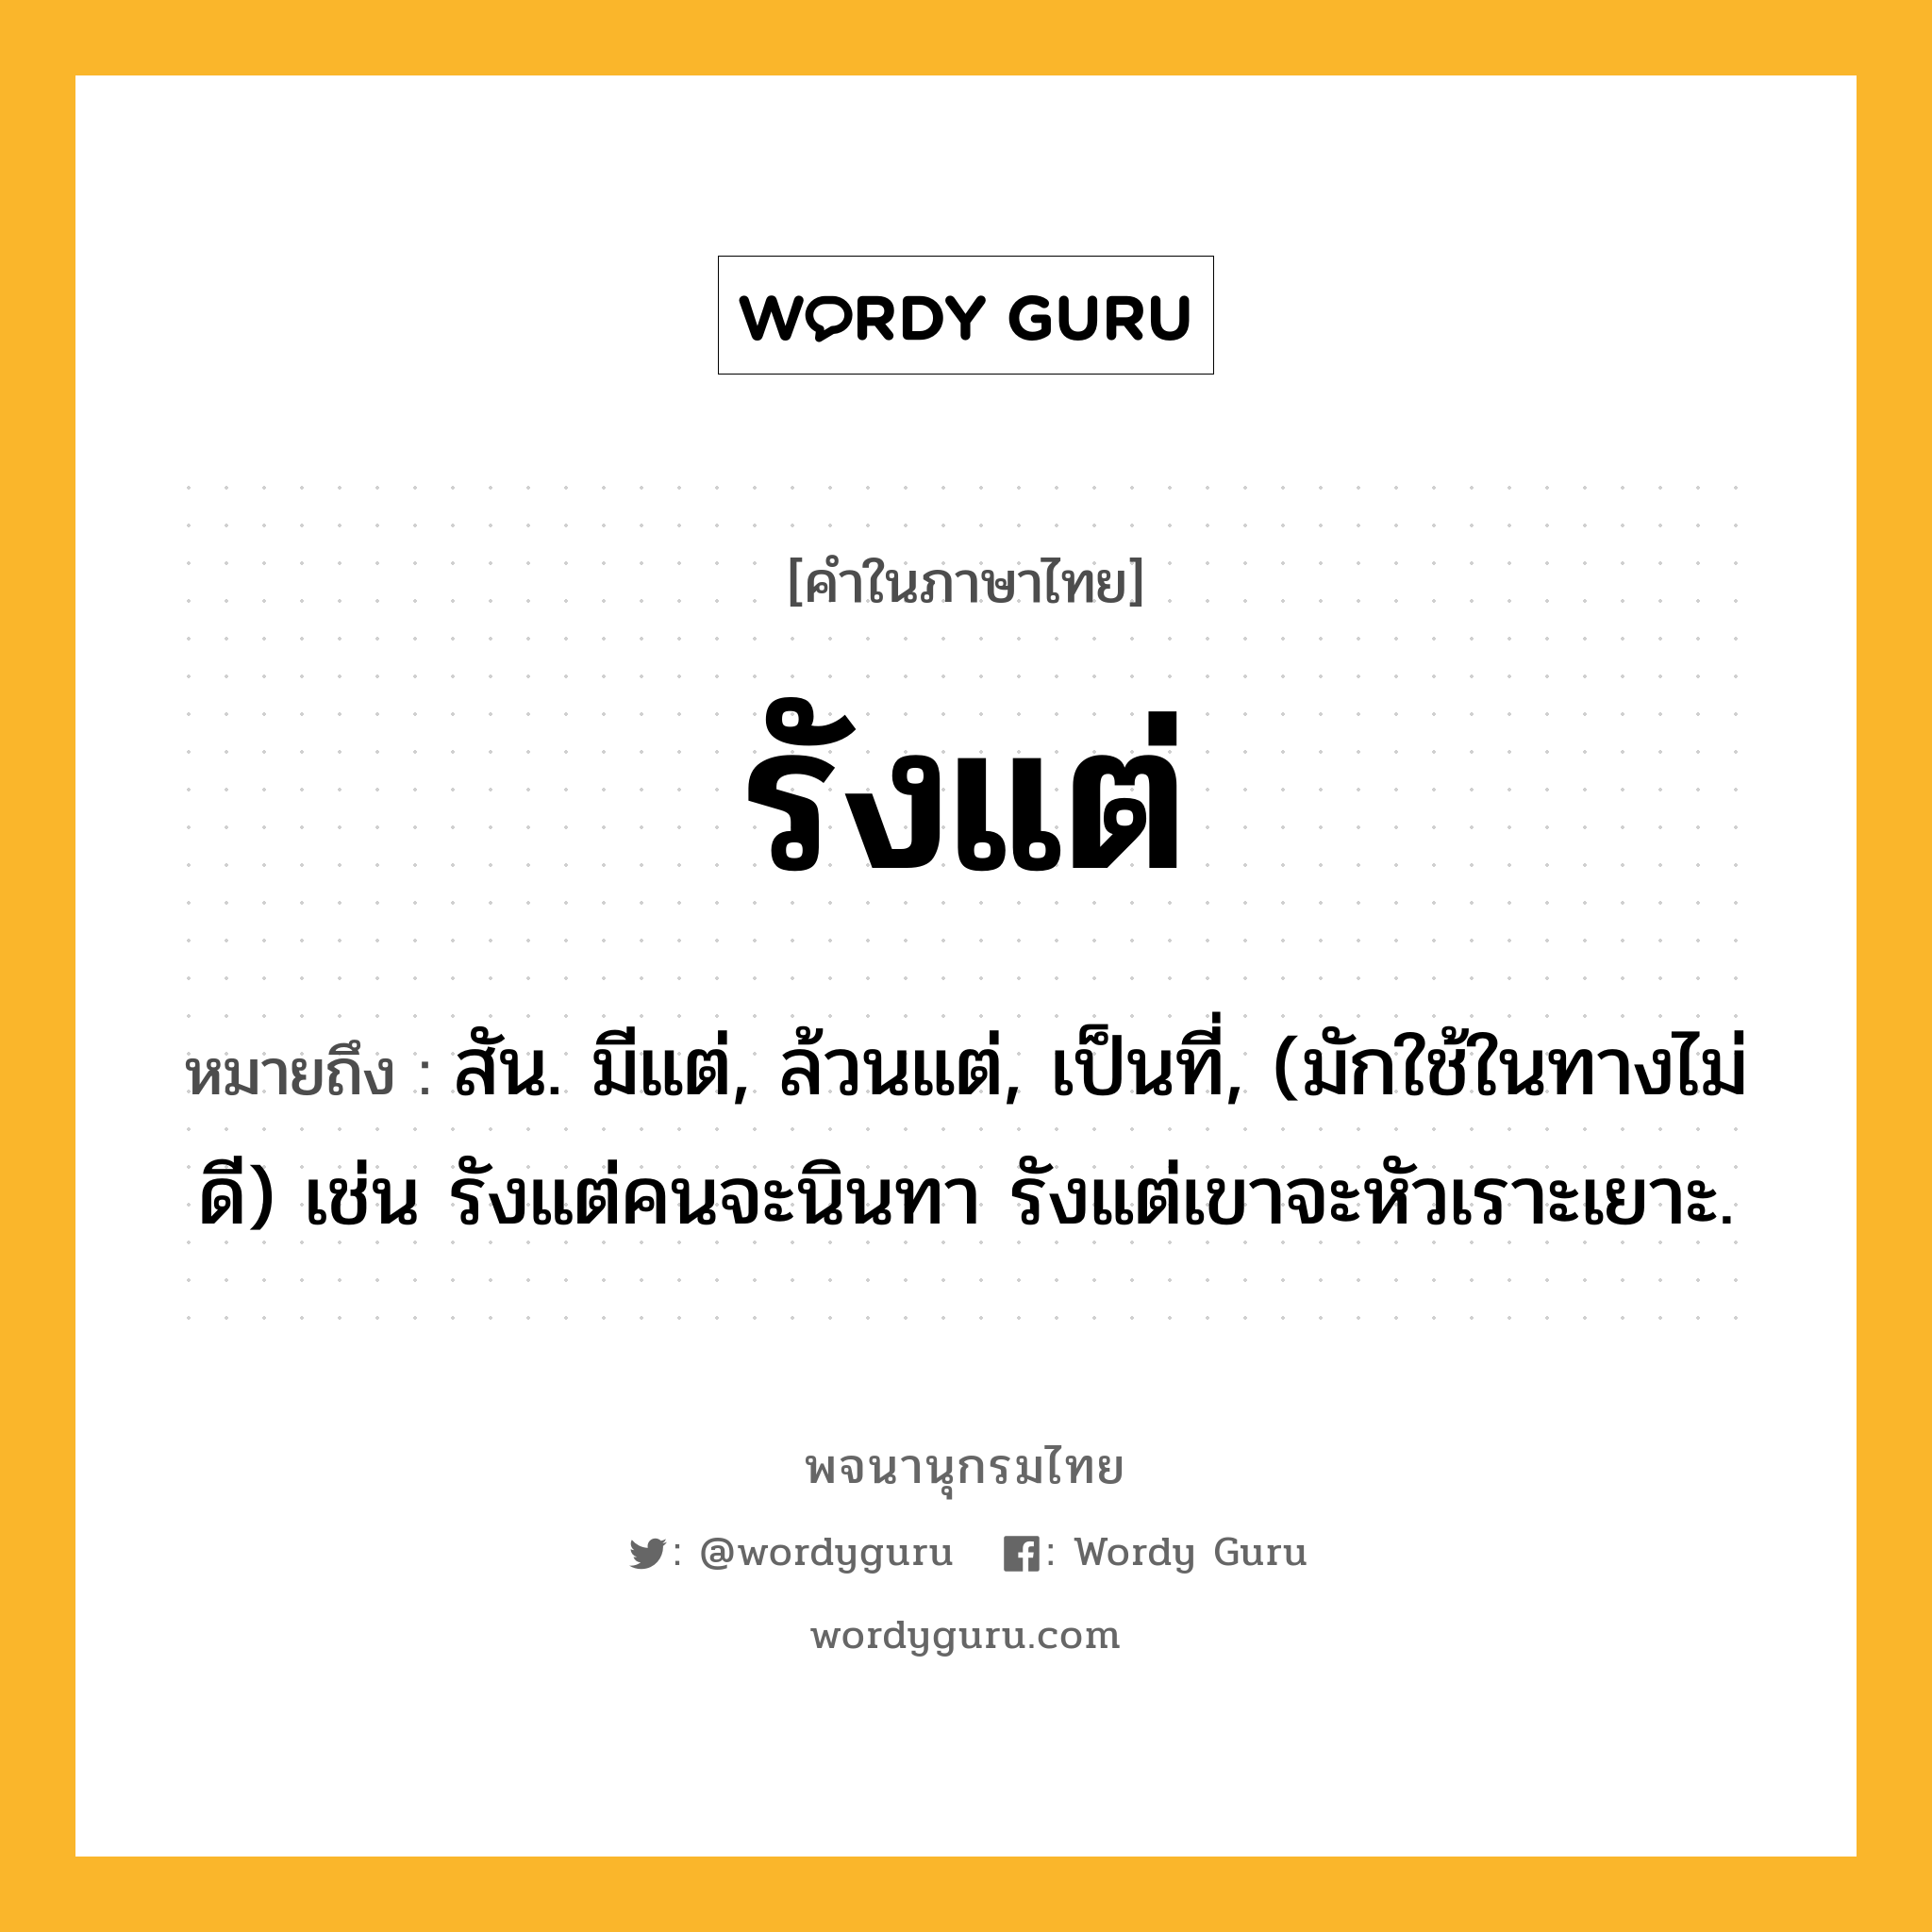 รังแต่ ความหมาย หมายถึงอะไร?, คำในภาษาไทย รังแต่ หมายถึง สัน. มีแต่, ล้วนแต่, เป็นที่, (มักใช้ในทางไม่ดี) เช่น รังแต่คนจะนินทา รังแต่เขาจะหัวเราะเยาะ.